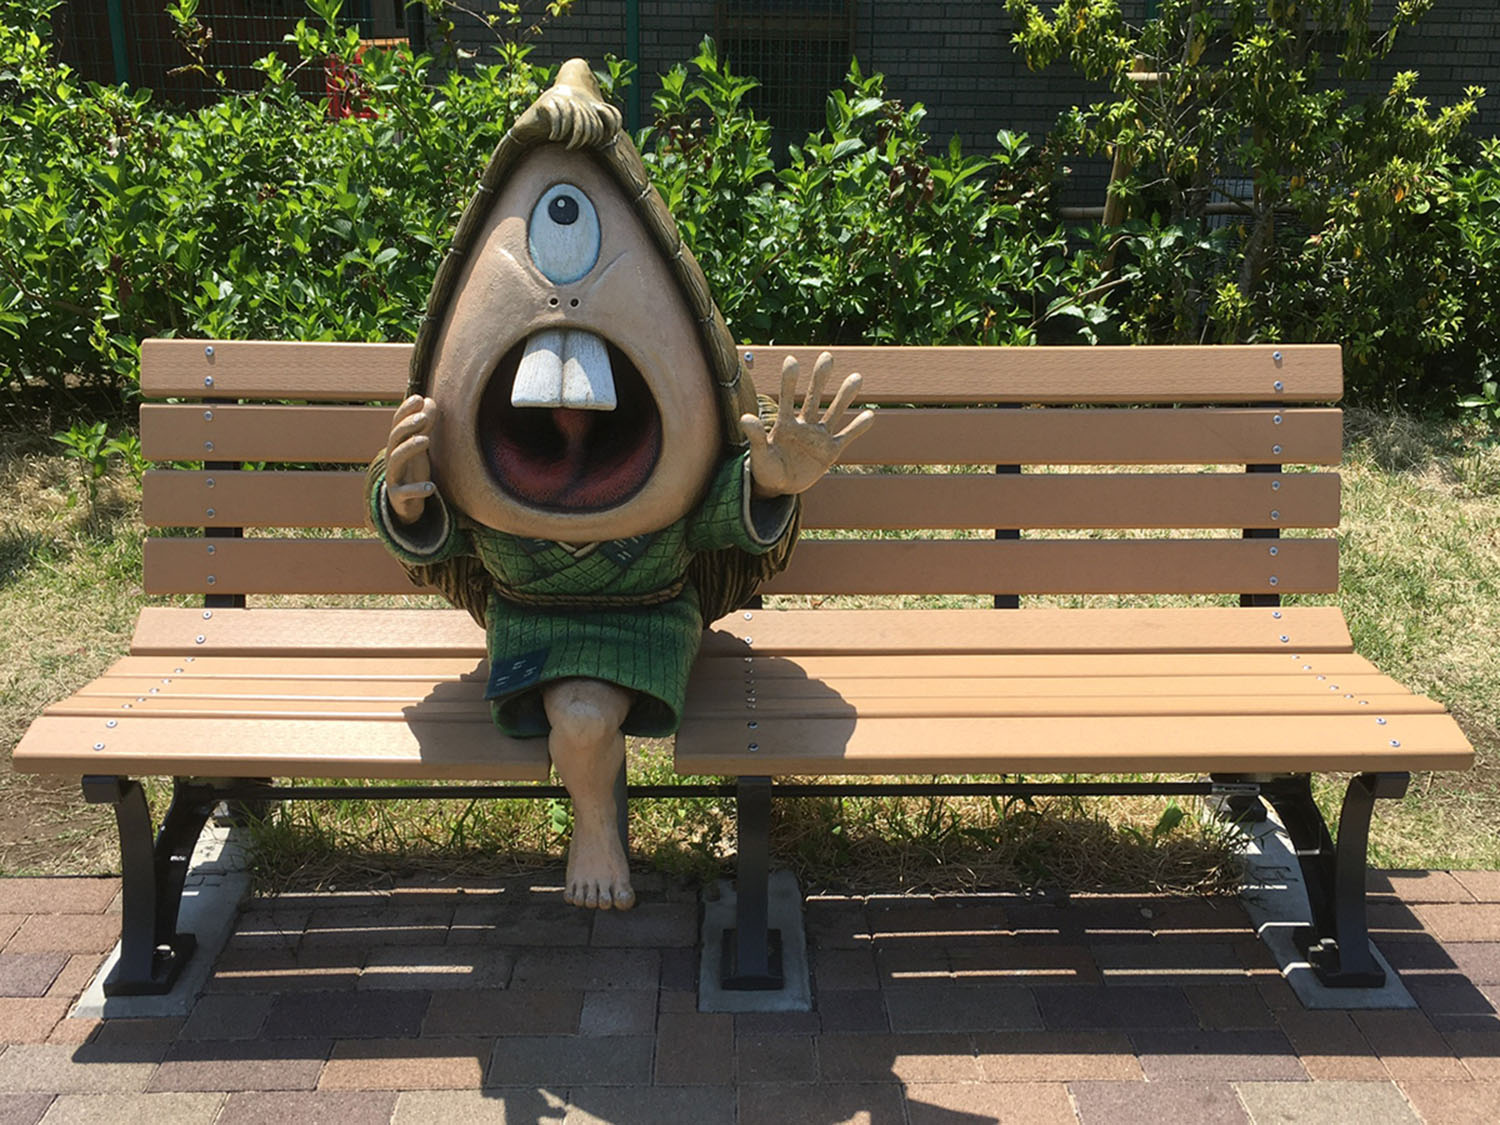 調布駅近くにできた「鬼太郎ひろば」の呼子ベンチ。ひろば内には「ゲゲゲの鬼太郎」のキャラクターがあちらこちらにいる。